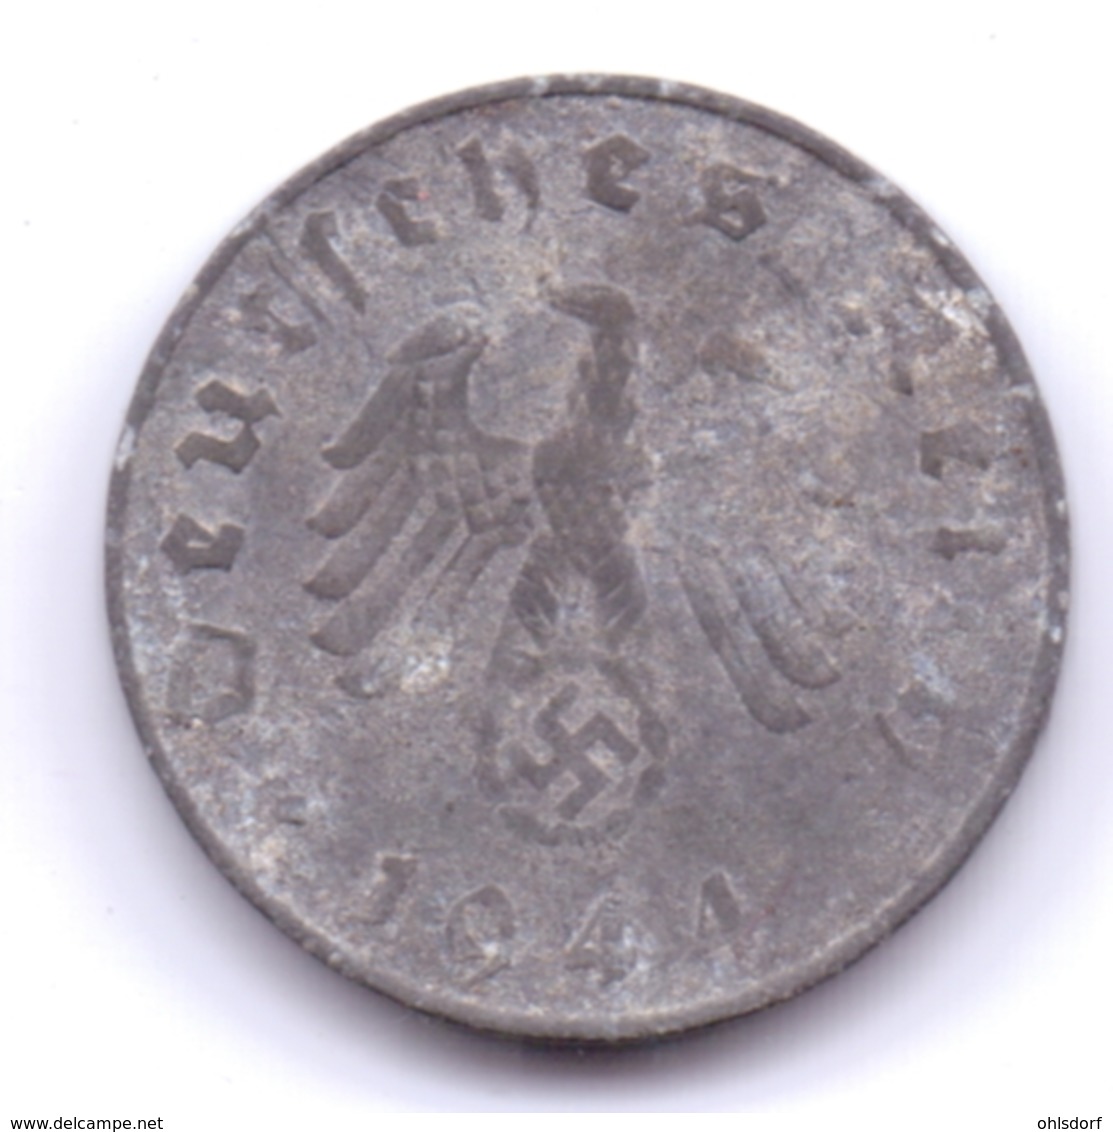 DEUTSCHES REICH 1944 G: 10 Reichspfennig, KM 101 - 10 Reichspfennig